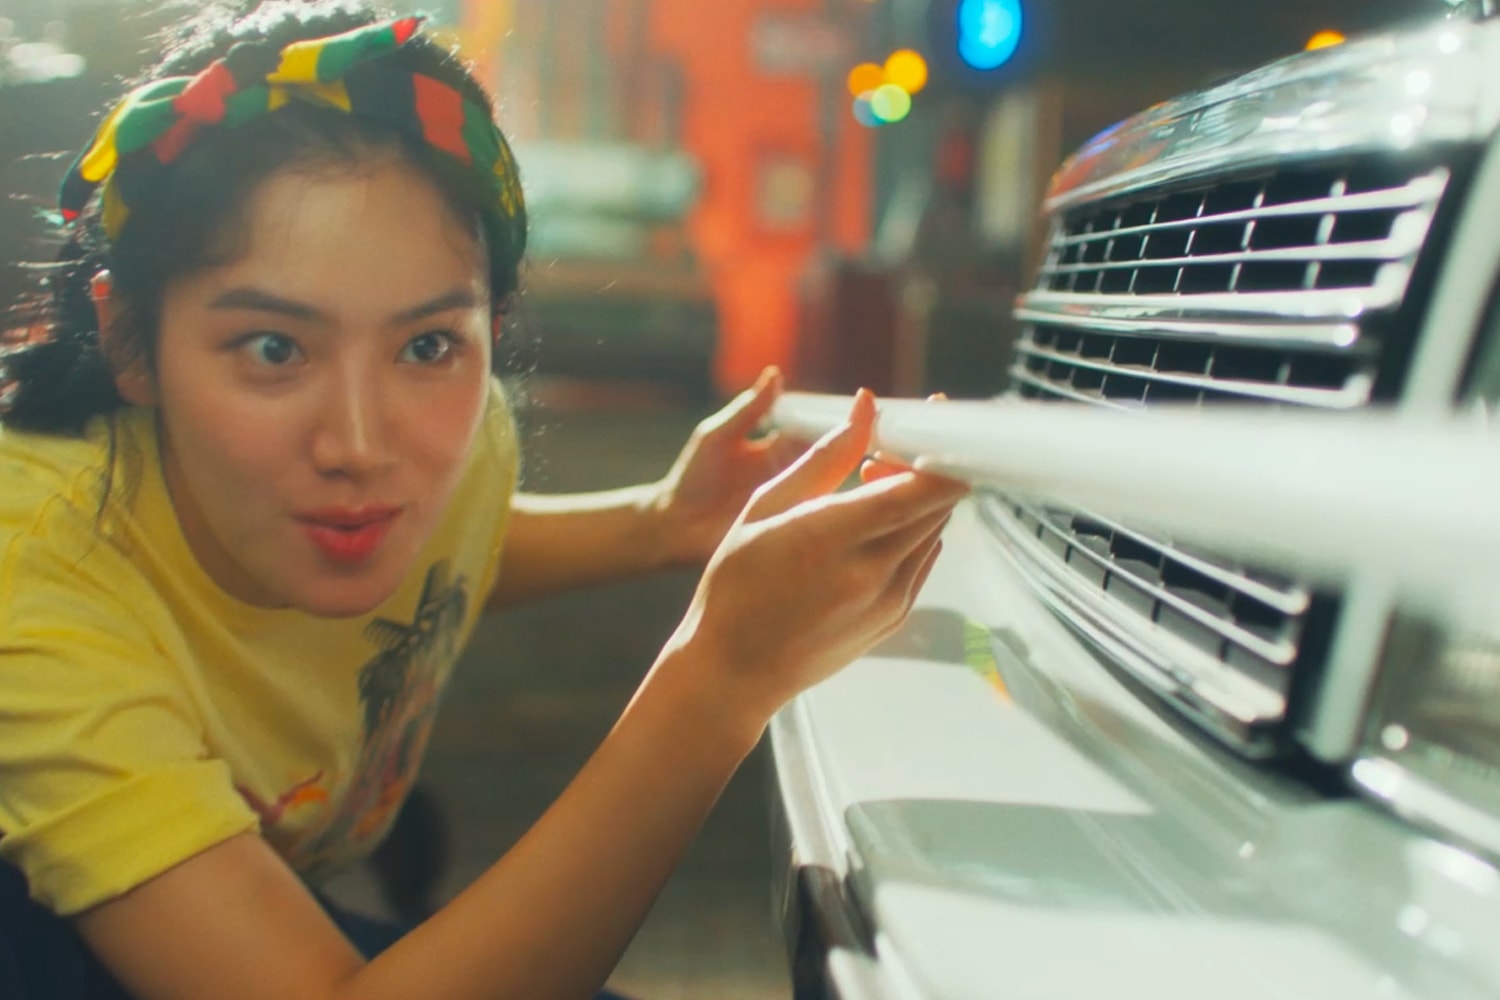 현대자동차 x '서울대작전', 7세대 그랜저 티저 영상 공개 hyundai motor company 7th generation grandeur teaser